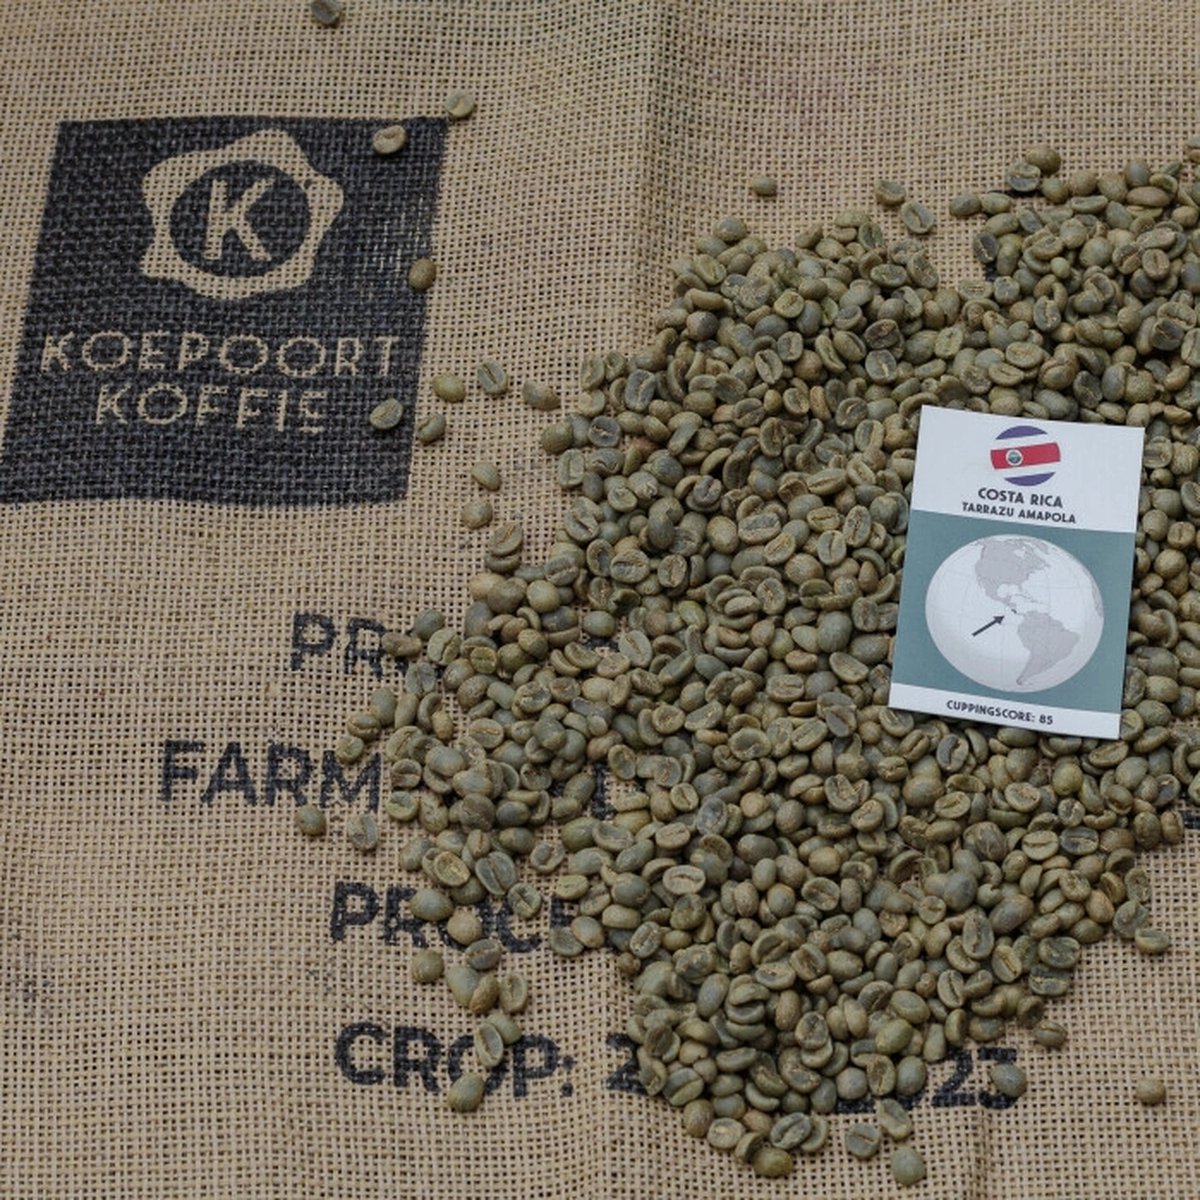 Costa Rica Tarrazu Amapola - ongebrande groene koffiebonen - 1 kg